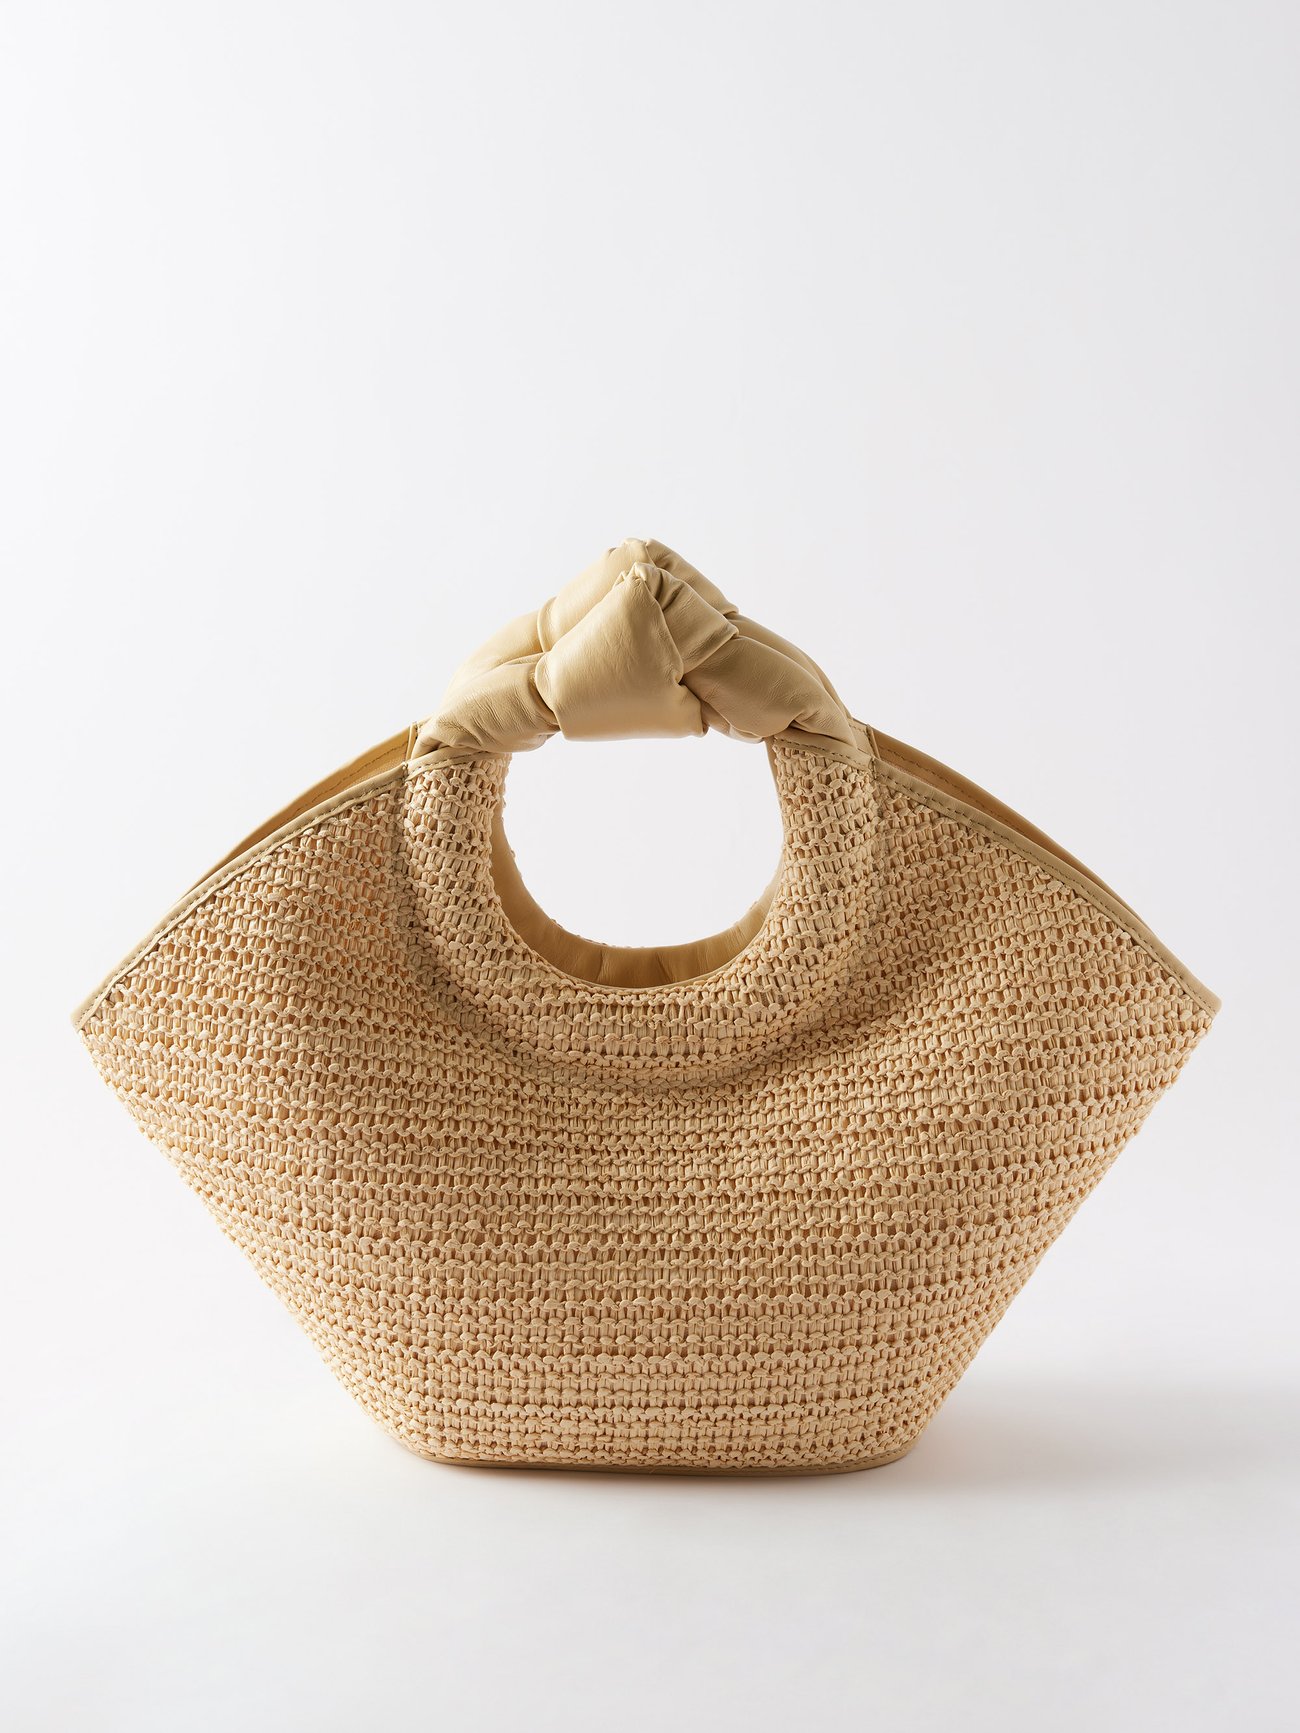 Straw tote bag CABAS M HEREU - Buy Online at BEIGE BROWN